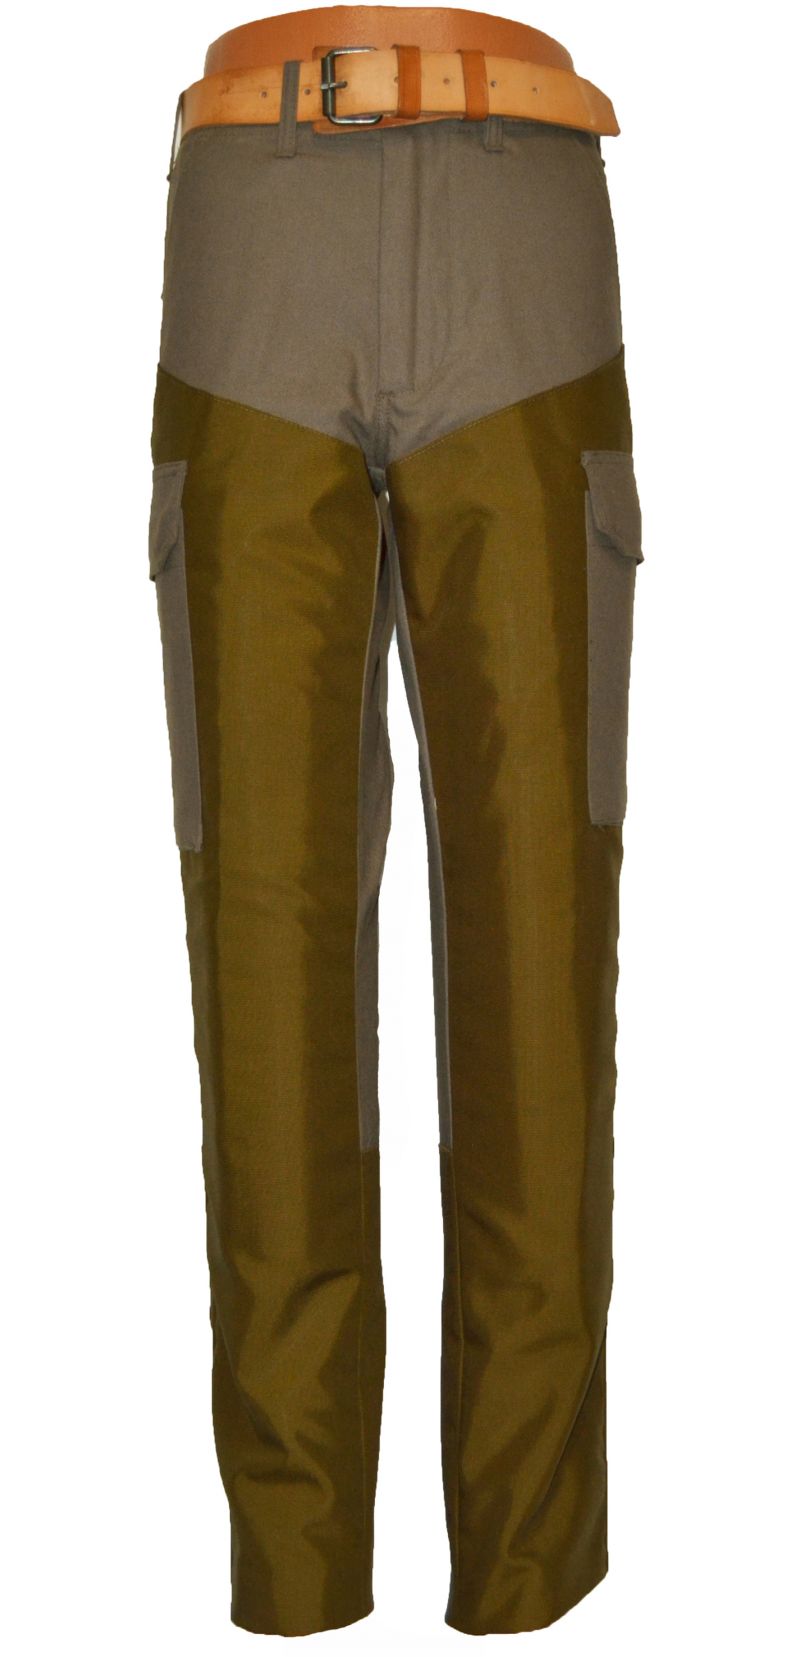 Pantaloni confezionati in cotone canvas con rinforzi in cordura,  antispina e totalmente antistrappo